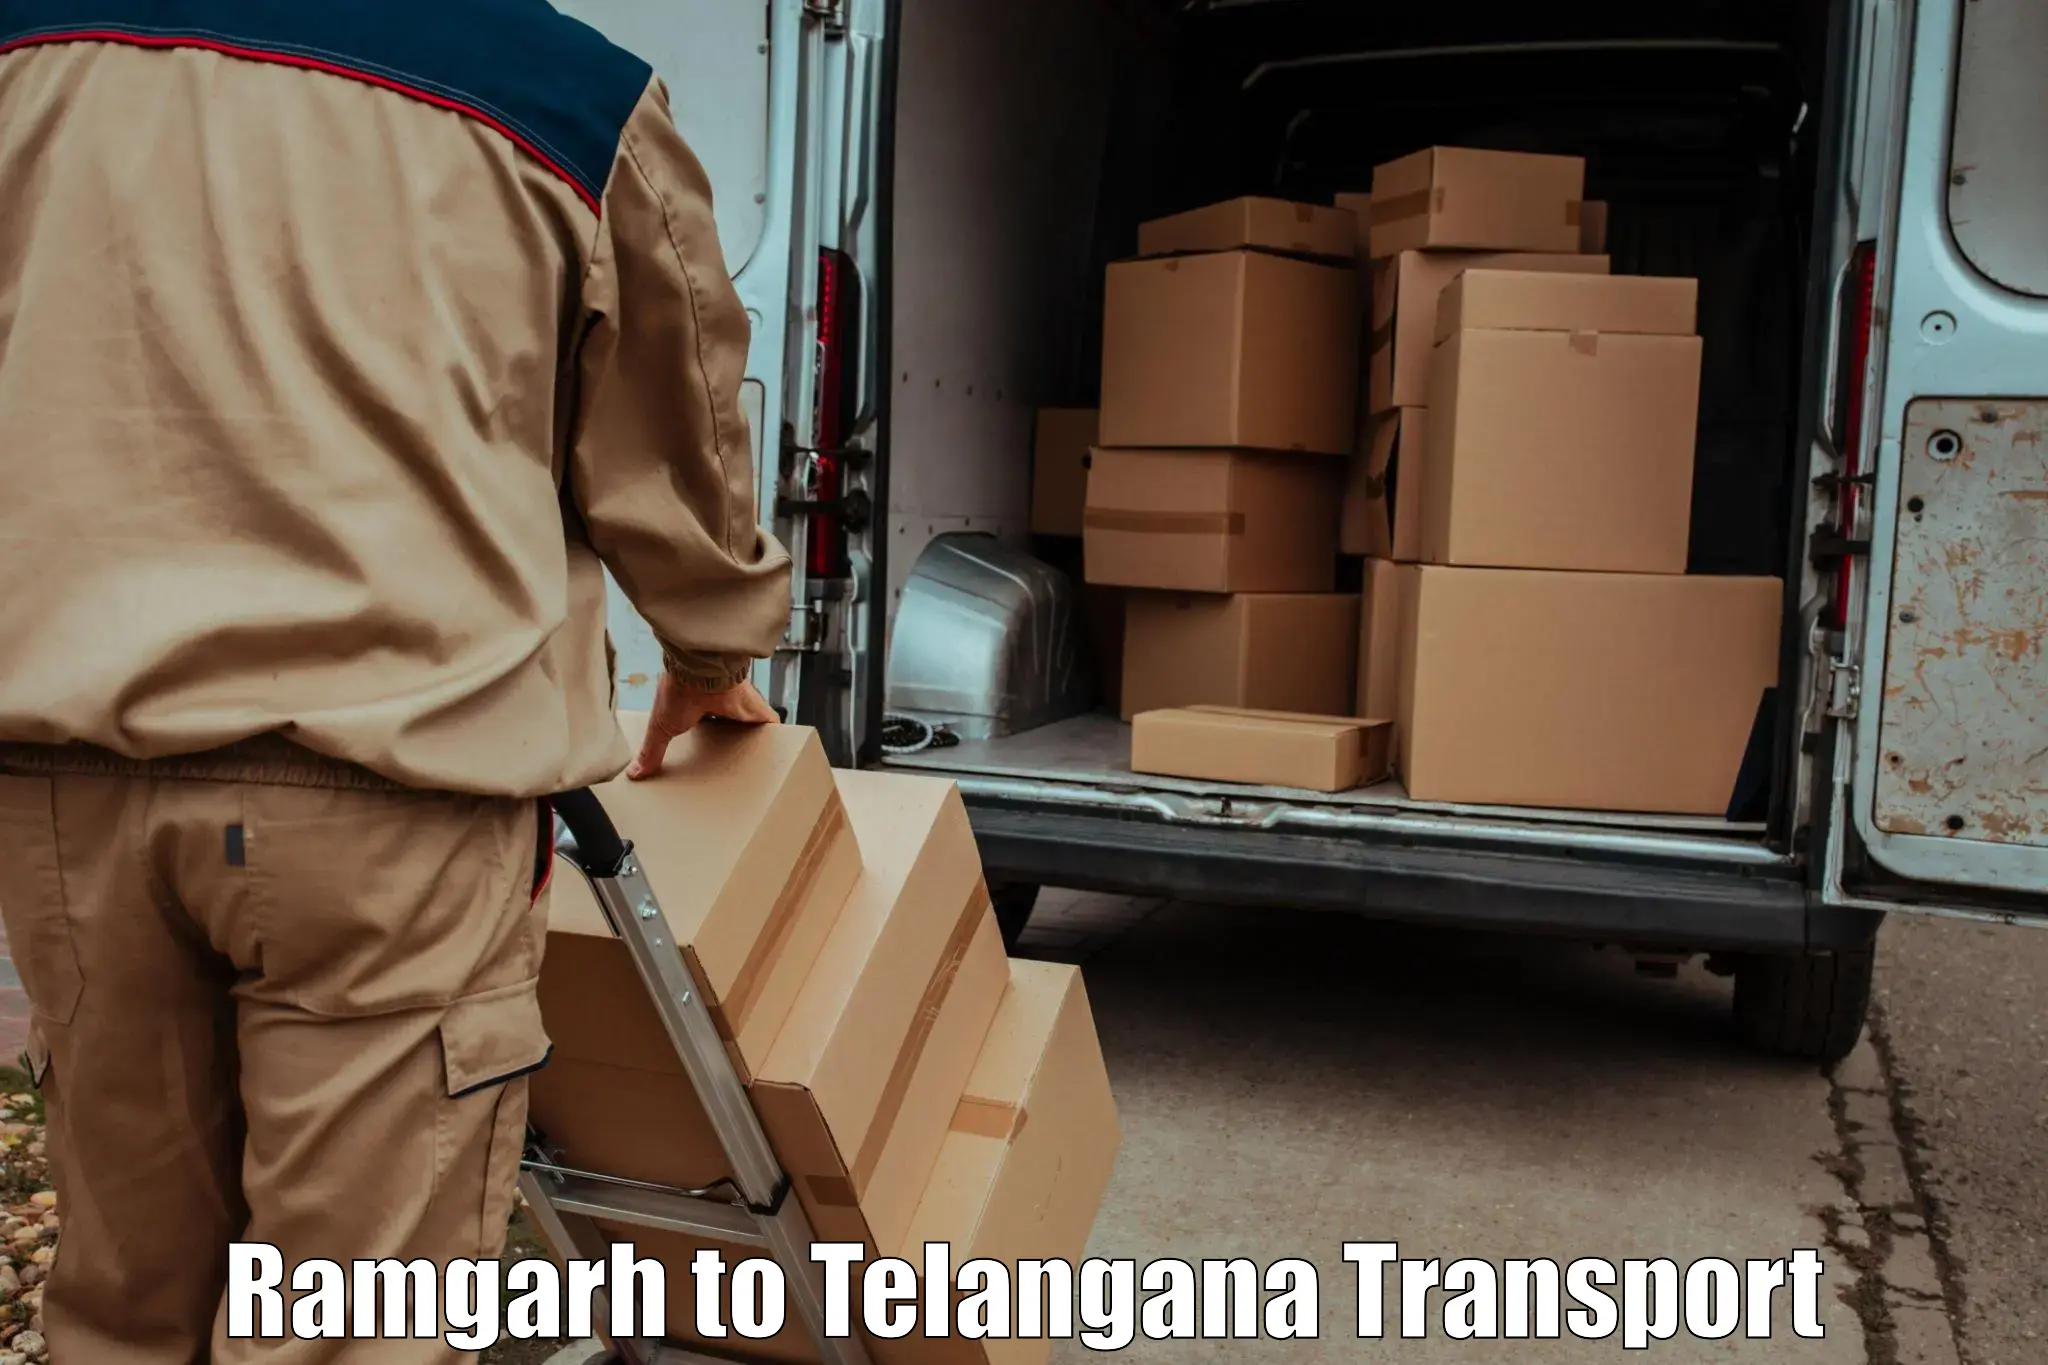 Bike shipping service Ramgarh to Rangareddy